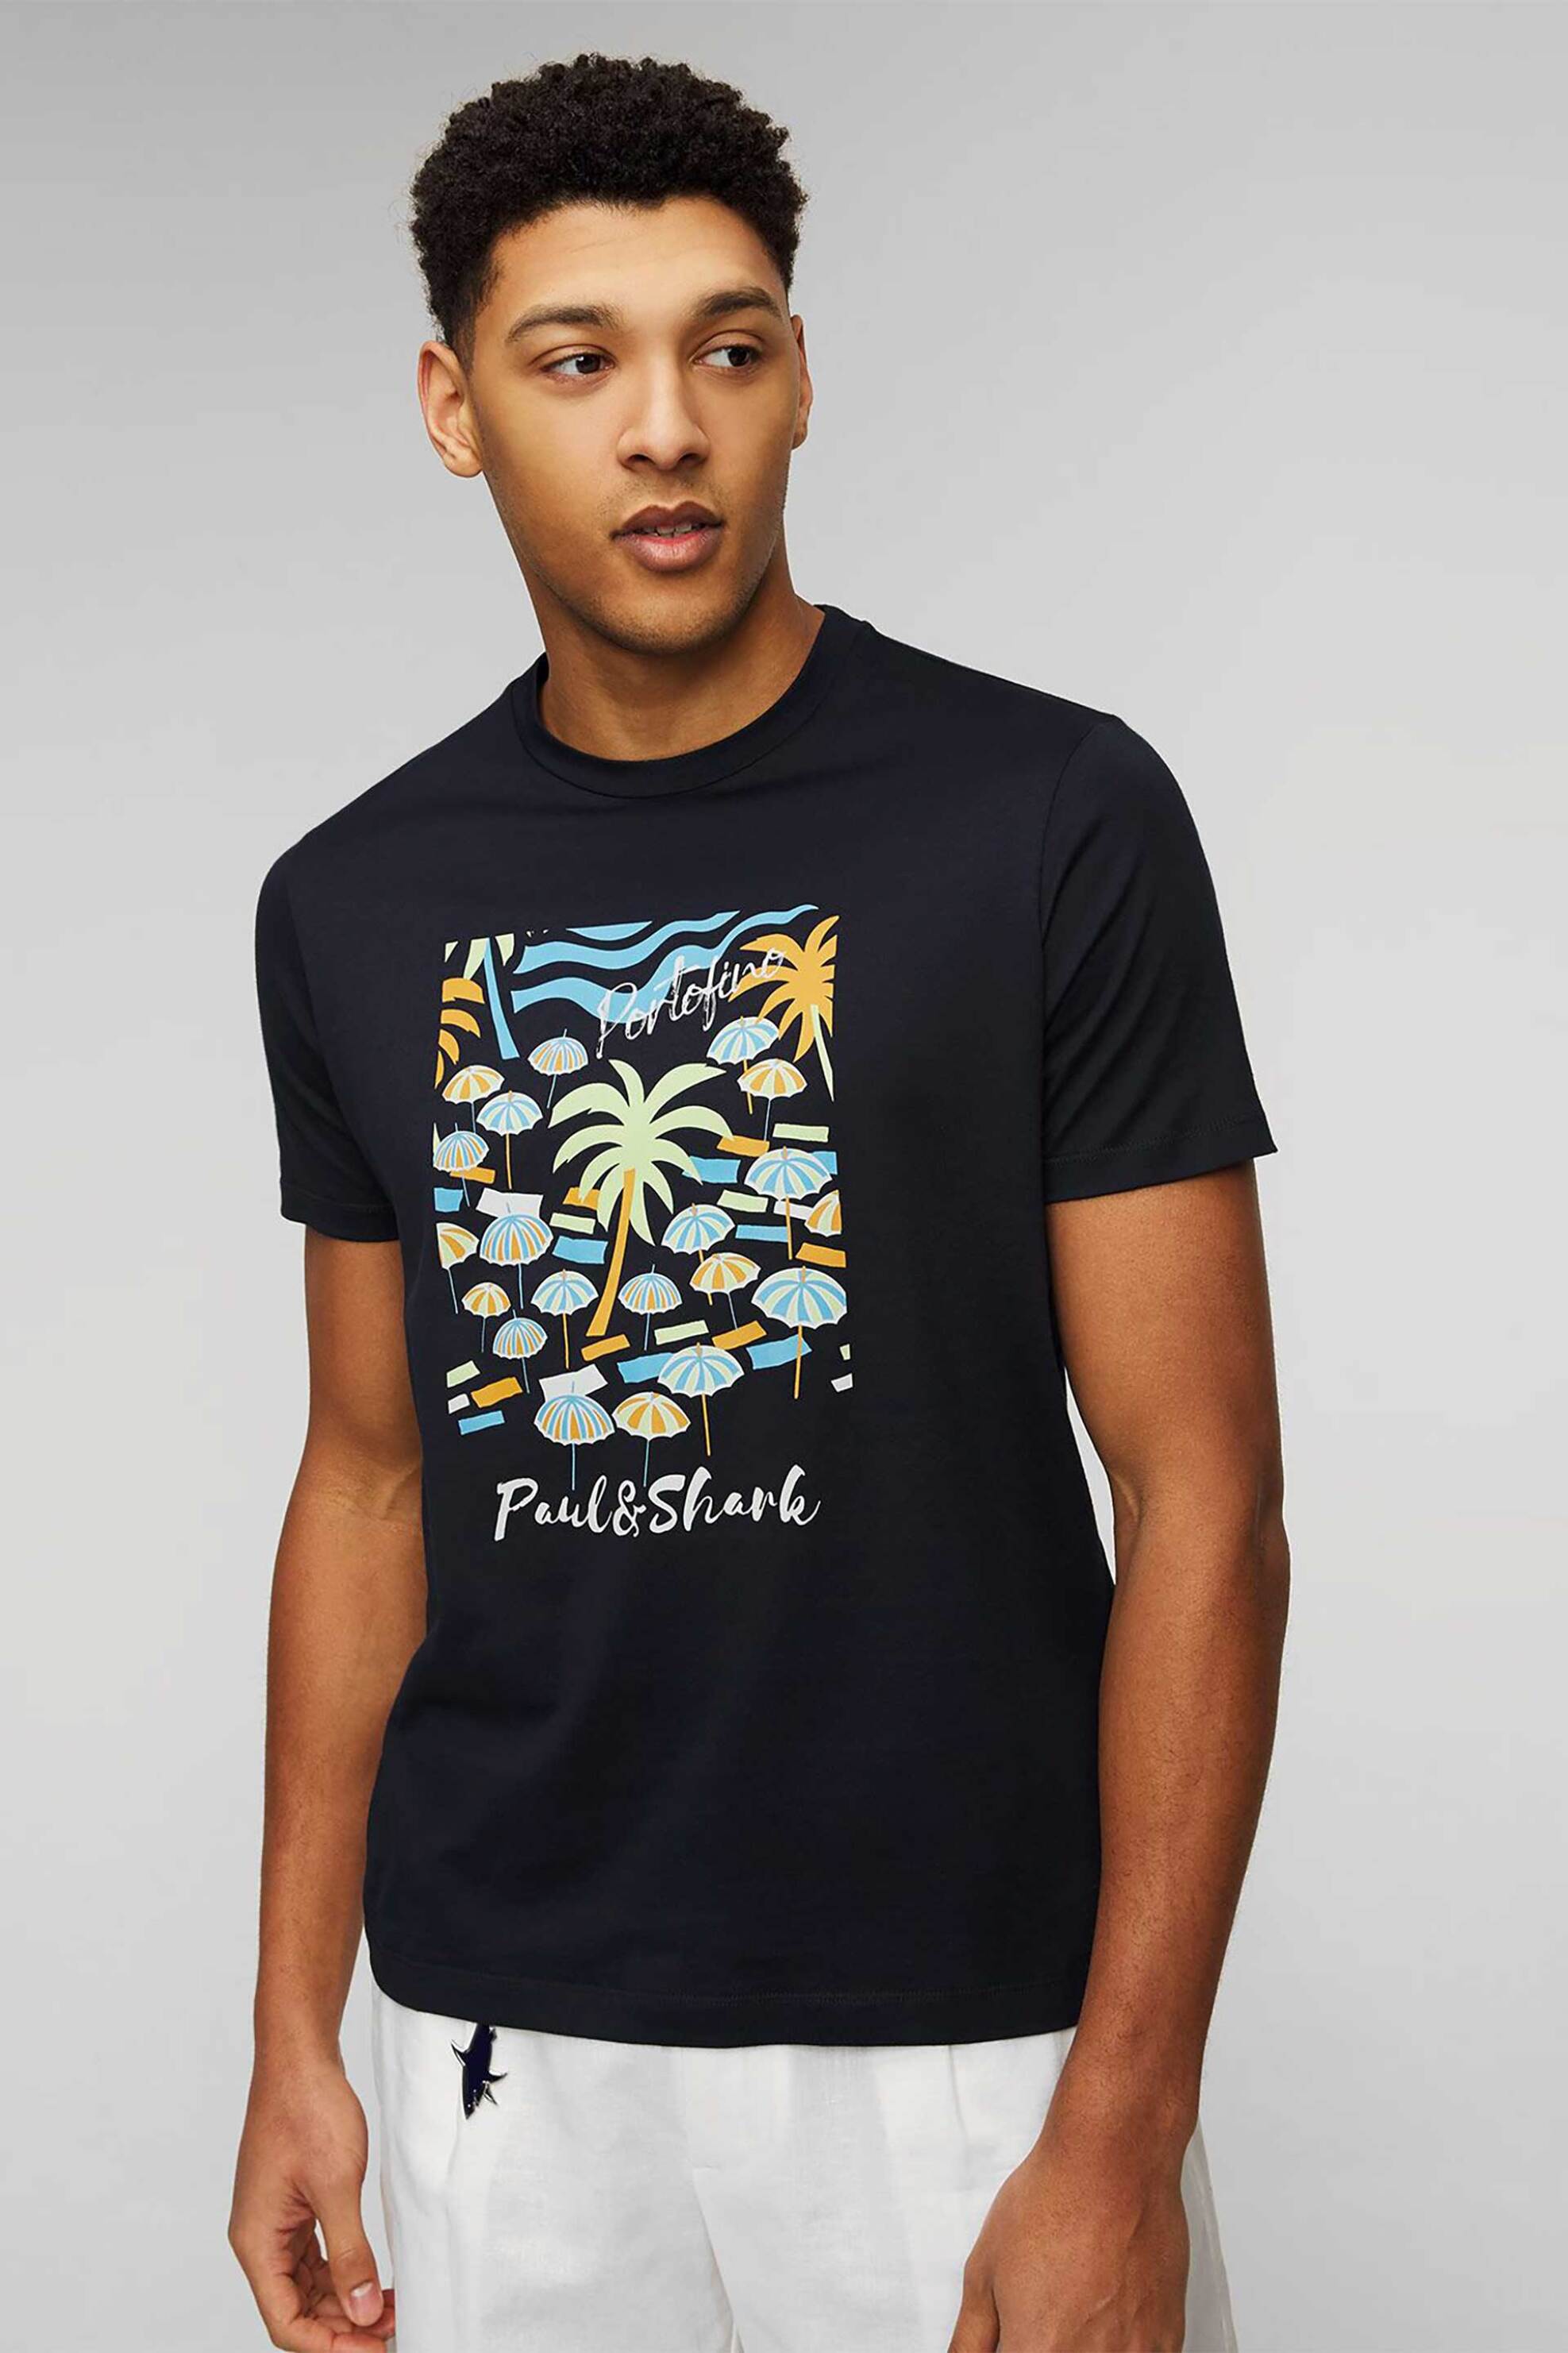 Ανδρική Μόδα > Ανδρικά Ρούχα > Ανδρικές Μπλούζες > Ανδρικά T-Shirts Paul&Shark ανδρικό T-shirt μονόχρωμο Portofino holiday print - 24411110 Μπλε Σκούρο